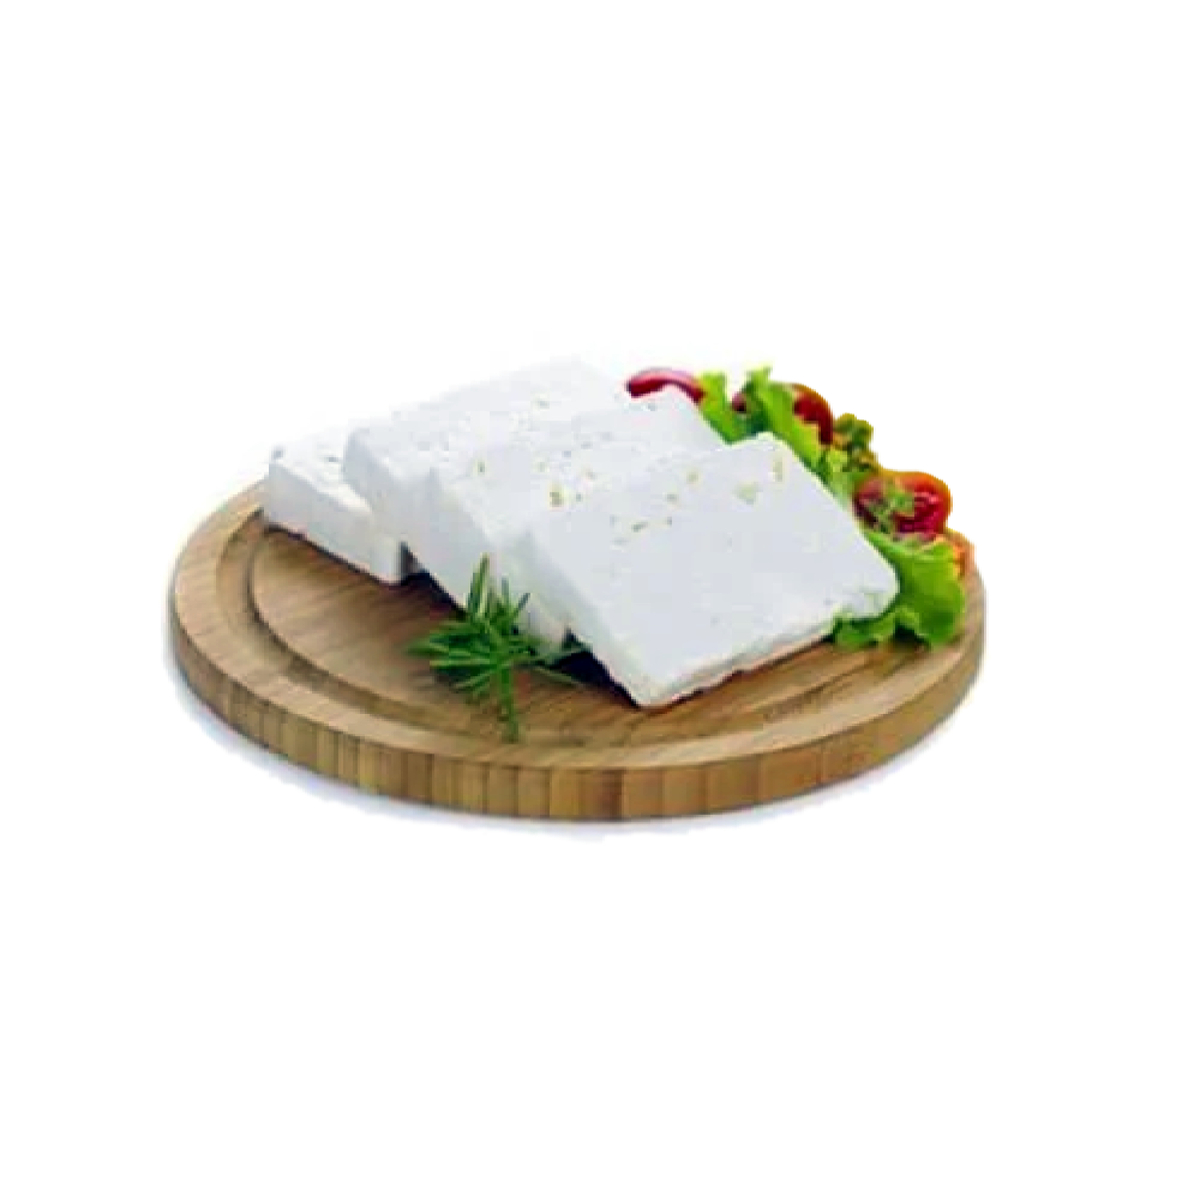 اشتري قم بشراء السعودية جبنة بيضاء براميلى 250 جم وزن تقريبي Online at Best Price من الموقع - من لولو هايبر ماركت White Cheese في السعودية